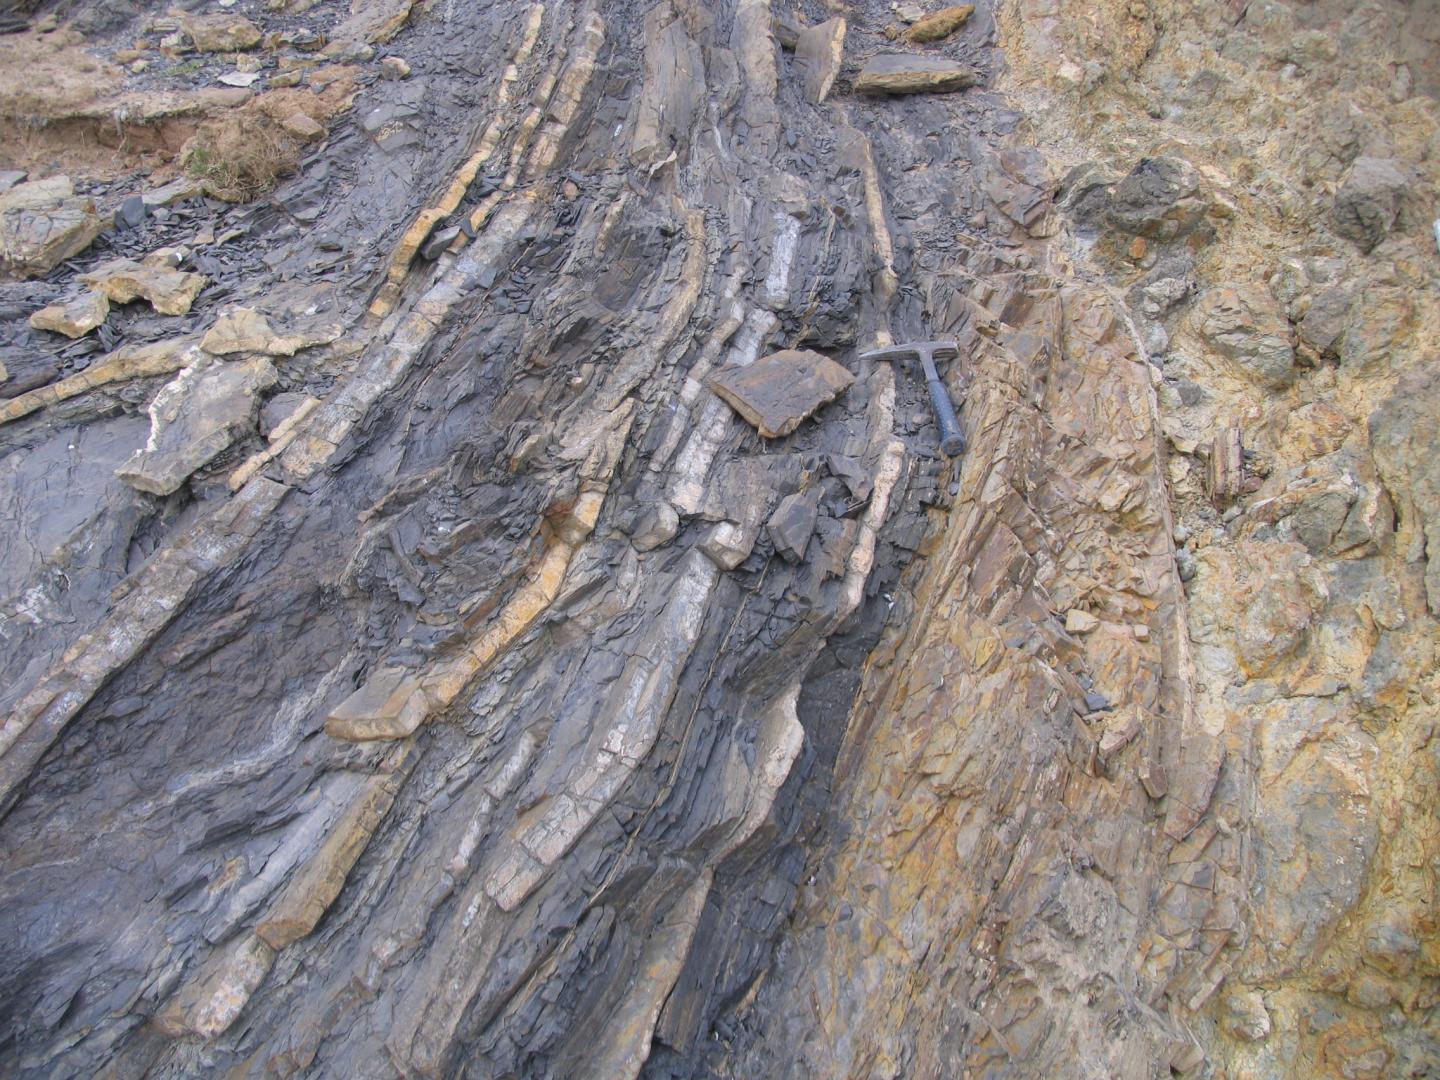 Outcrop Photos of the Permian-Triassic Boundary Interval at Penglaitan